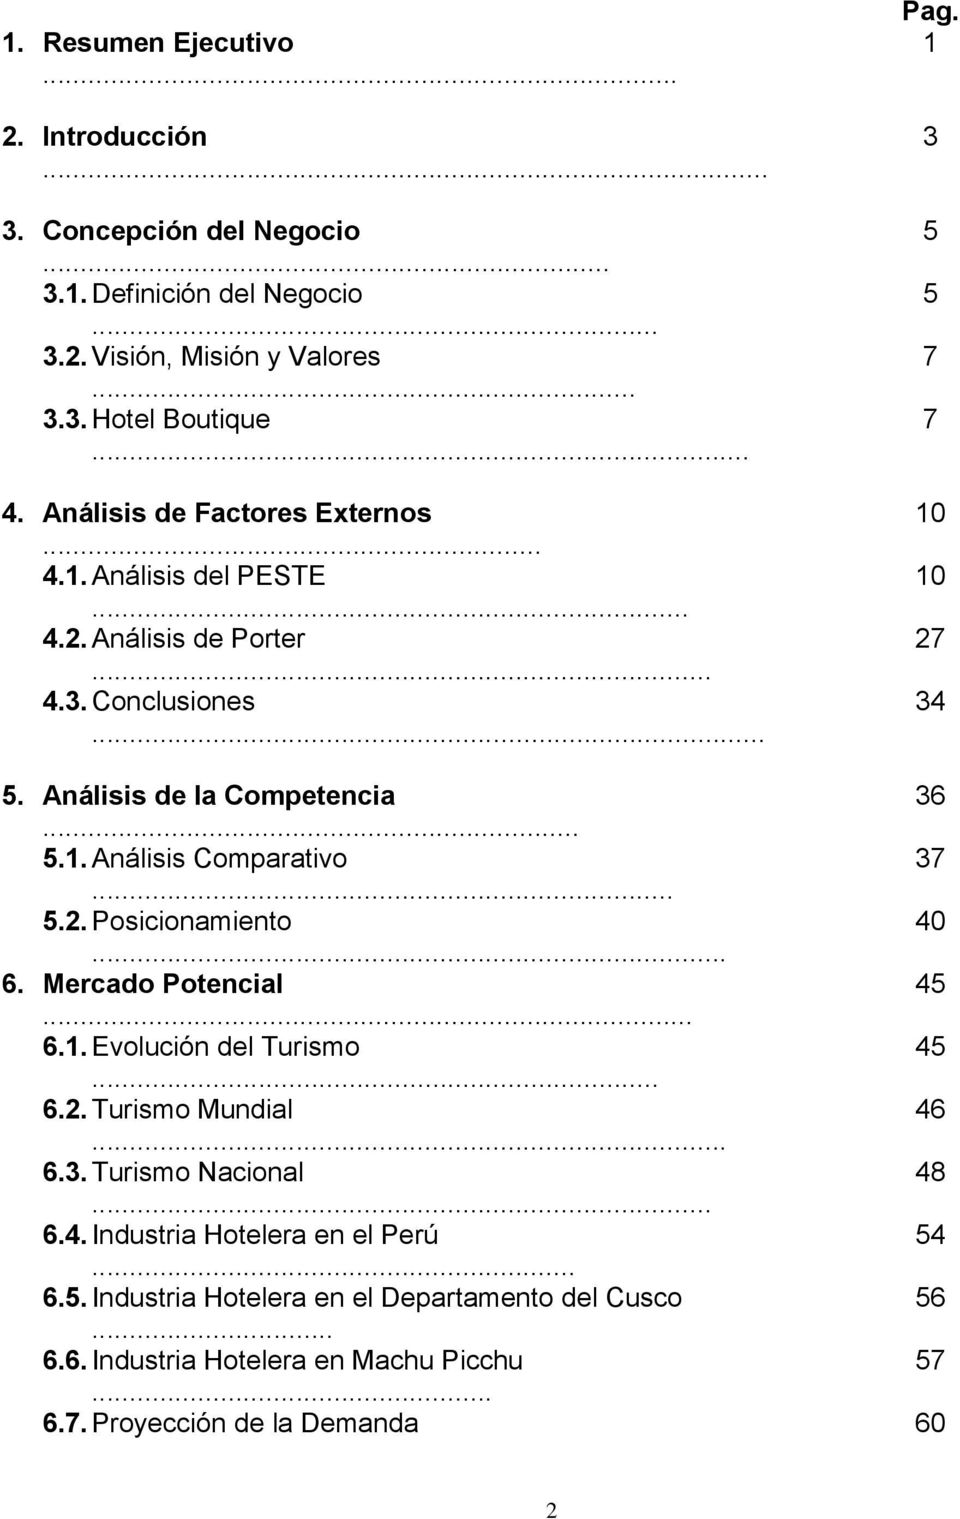 .. 5.2. Posicionamiento 40... 6. Mercado Potencial 45... 6.1. Evolución del Turismo 45... 6.2. Turismo Mundial 46... 6.3. Turismo Nacional 48... 6.4. Industria Hotelera en el Perú 54.